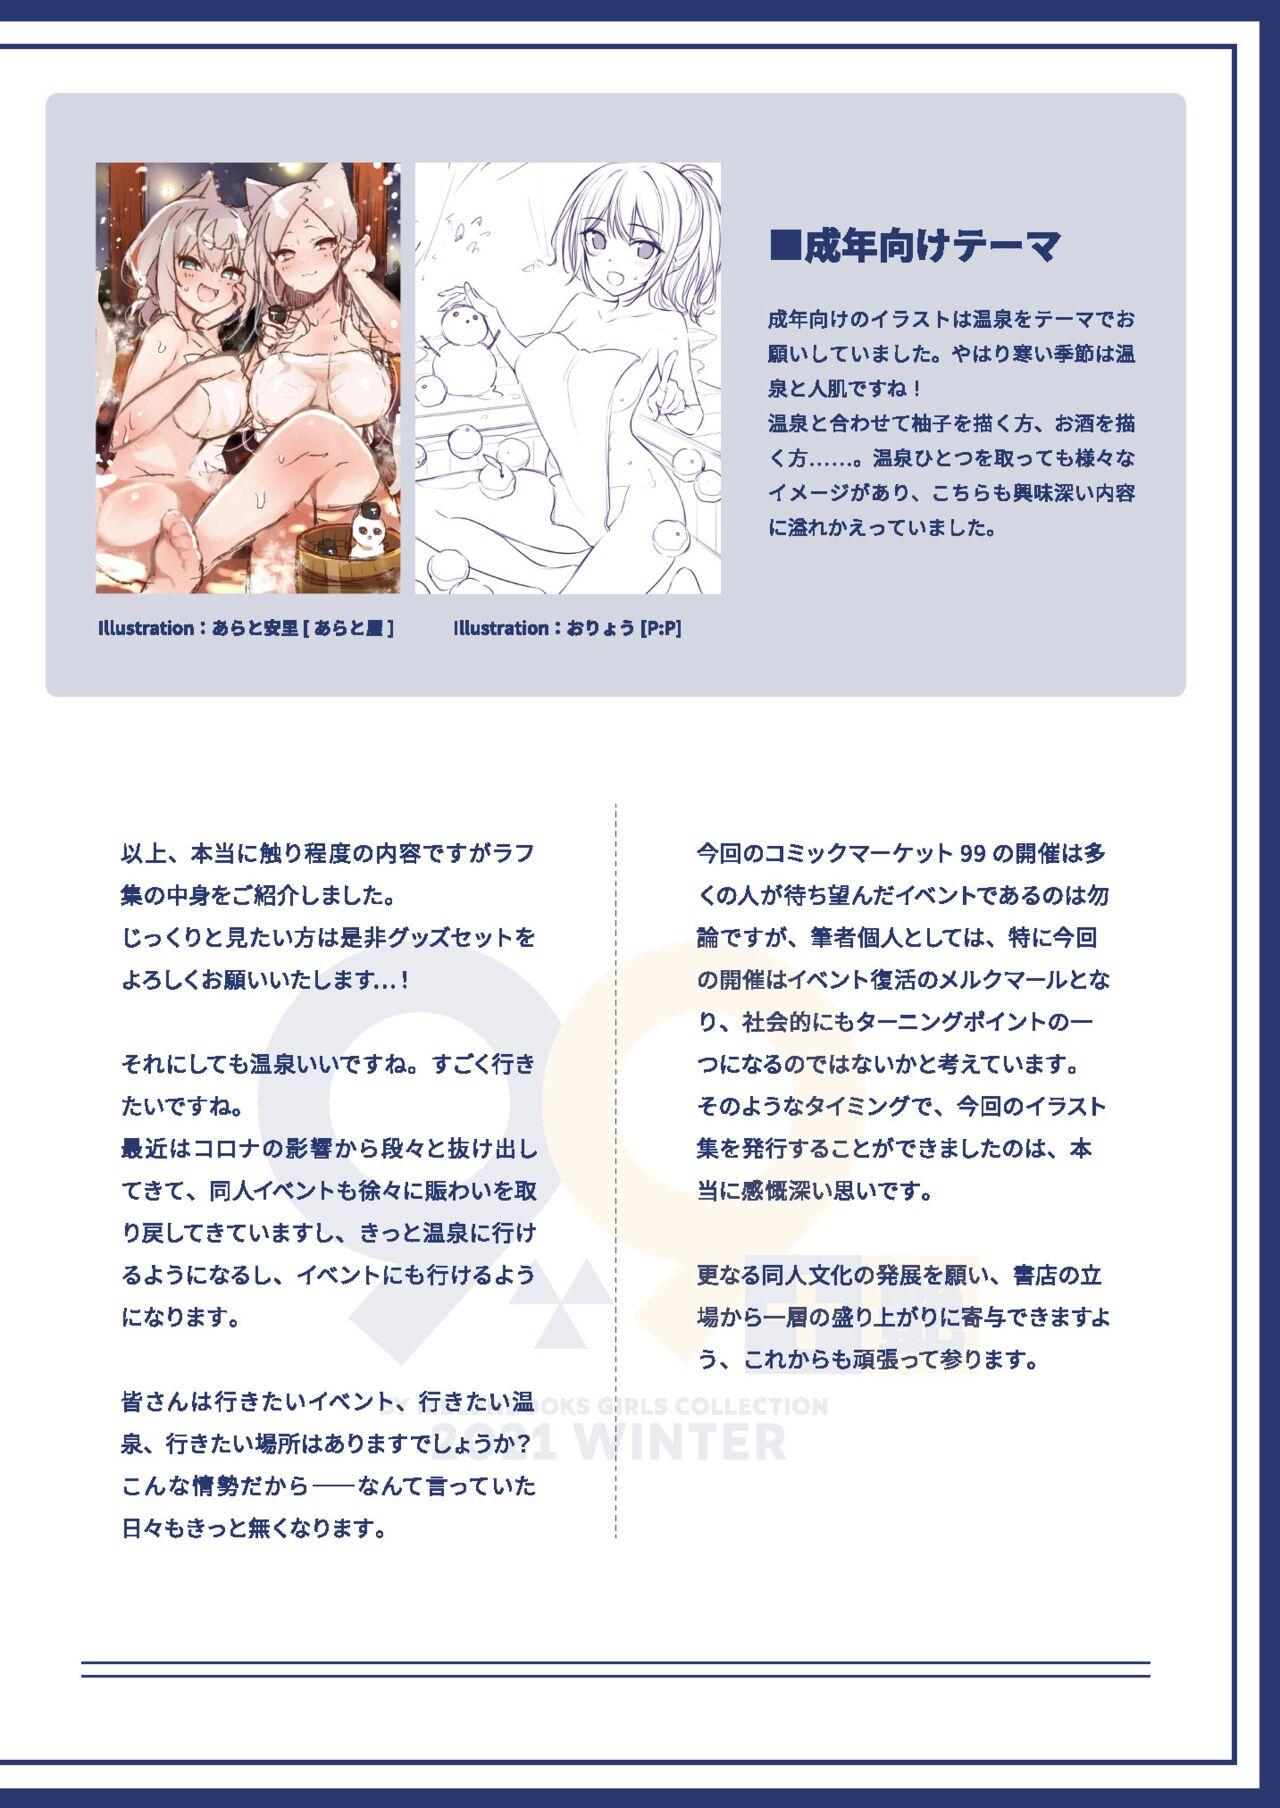 99+ 艶 by Melonbooks Girls Collection 2021 winter 83